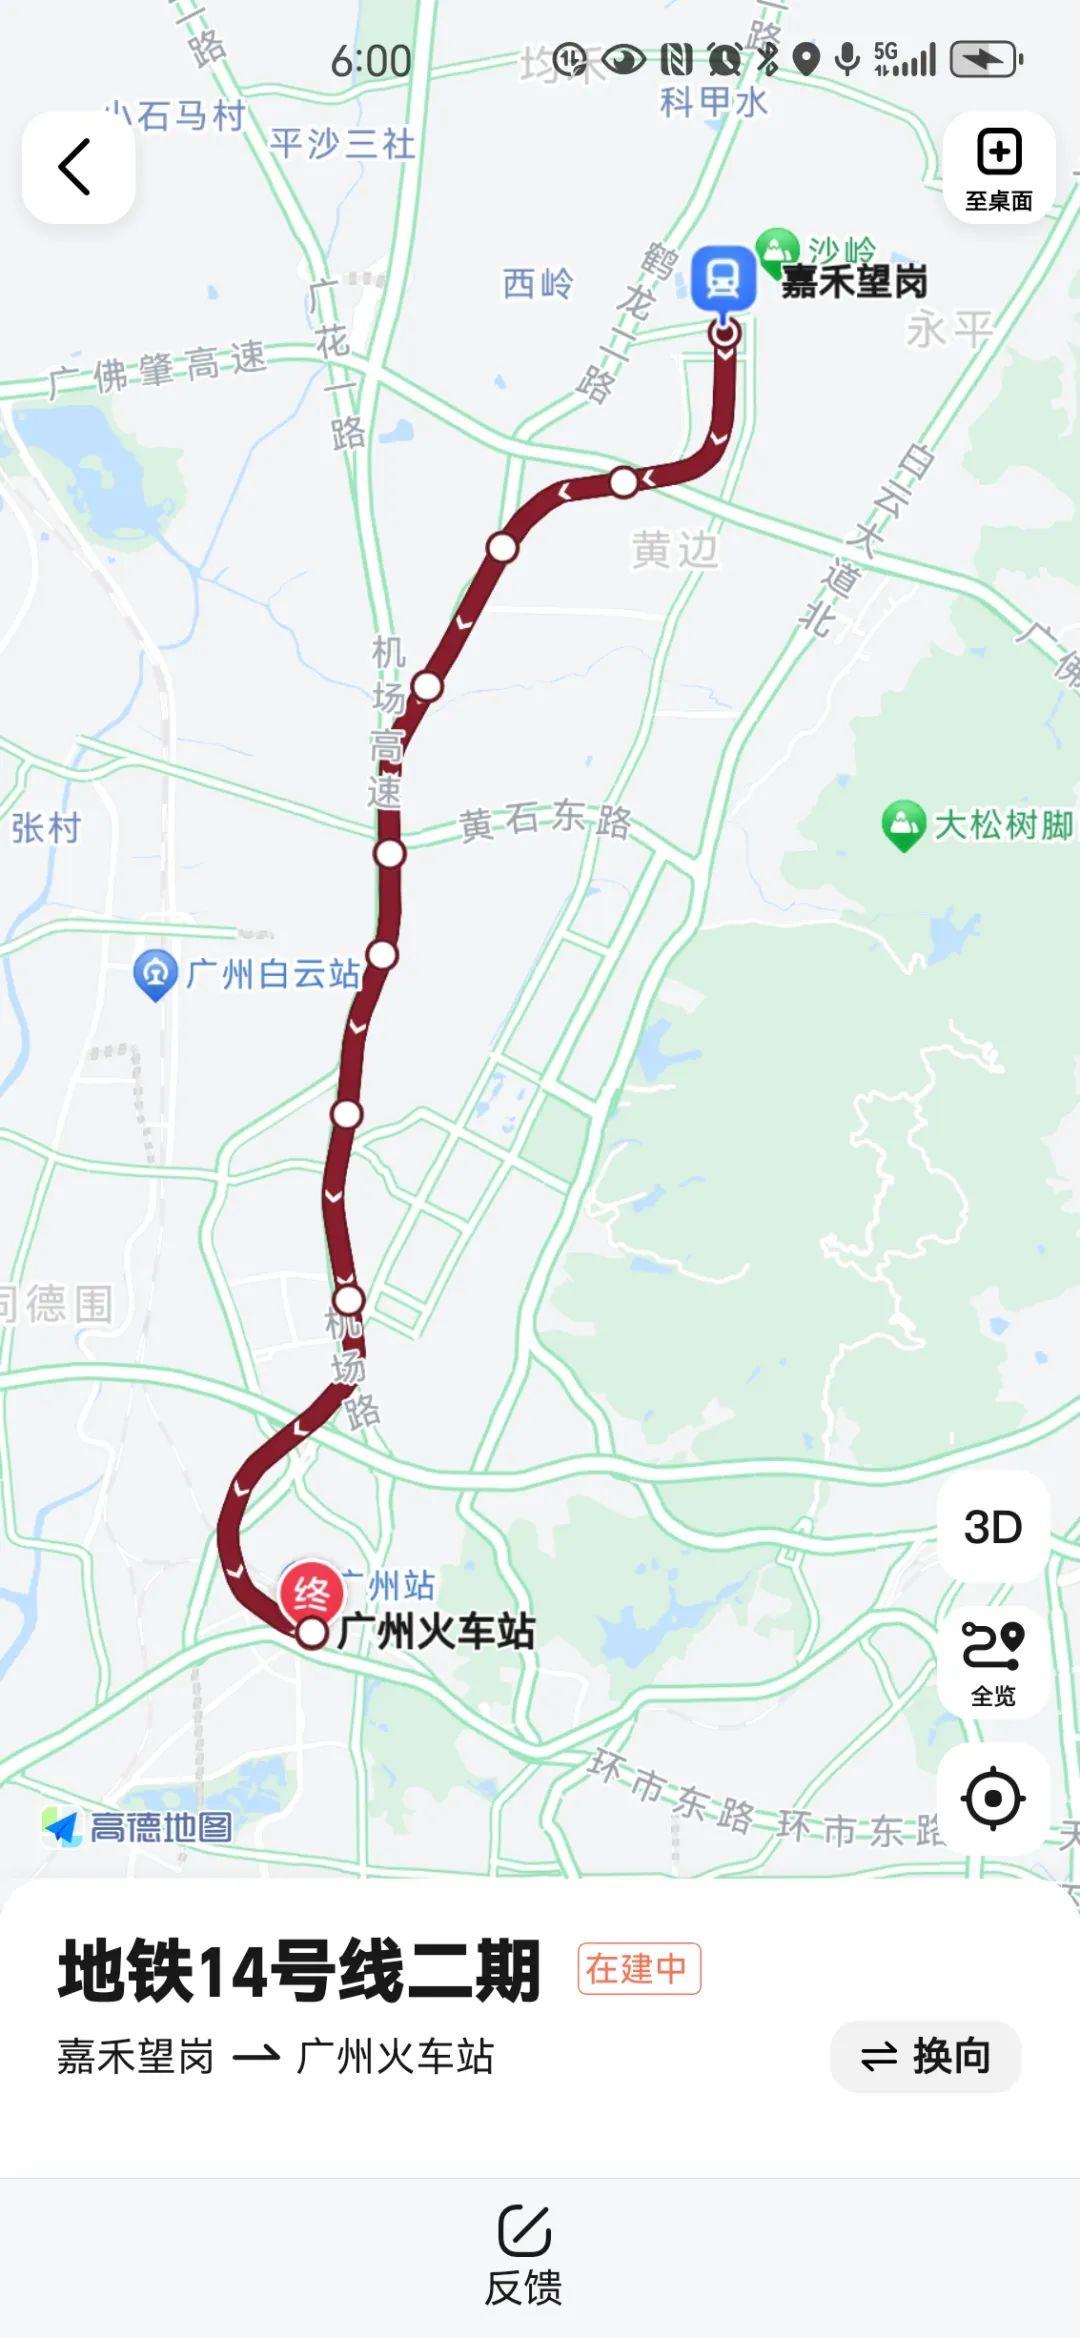 广州地铁14号线二期全长12公里穿越5个片区,设8座车站换乘站3座,呈